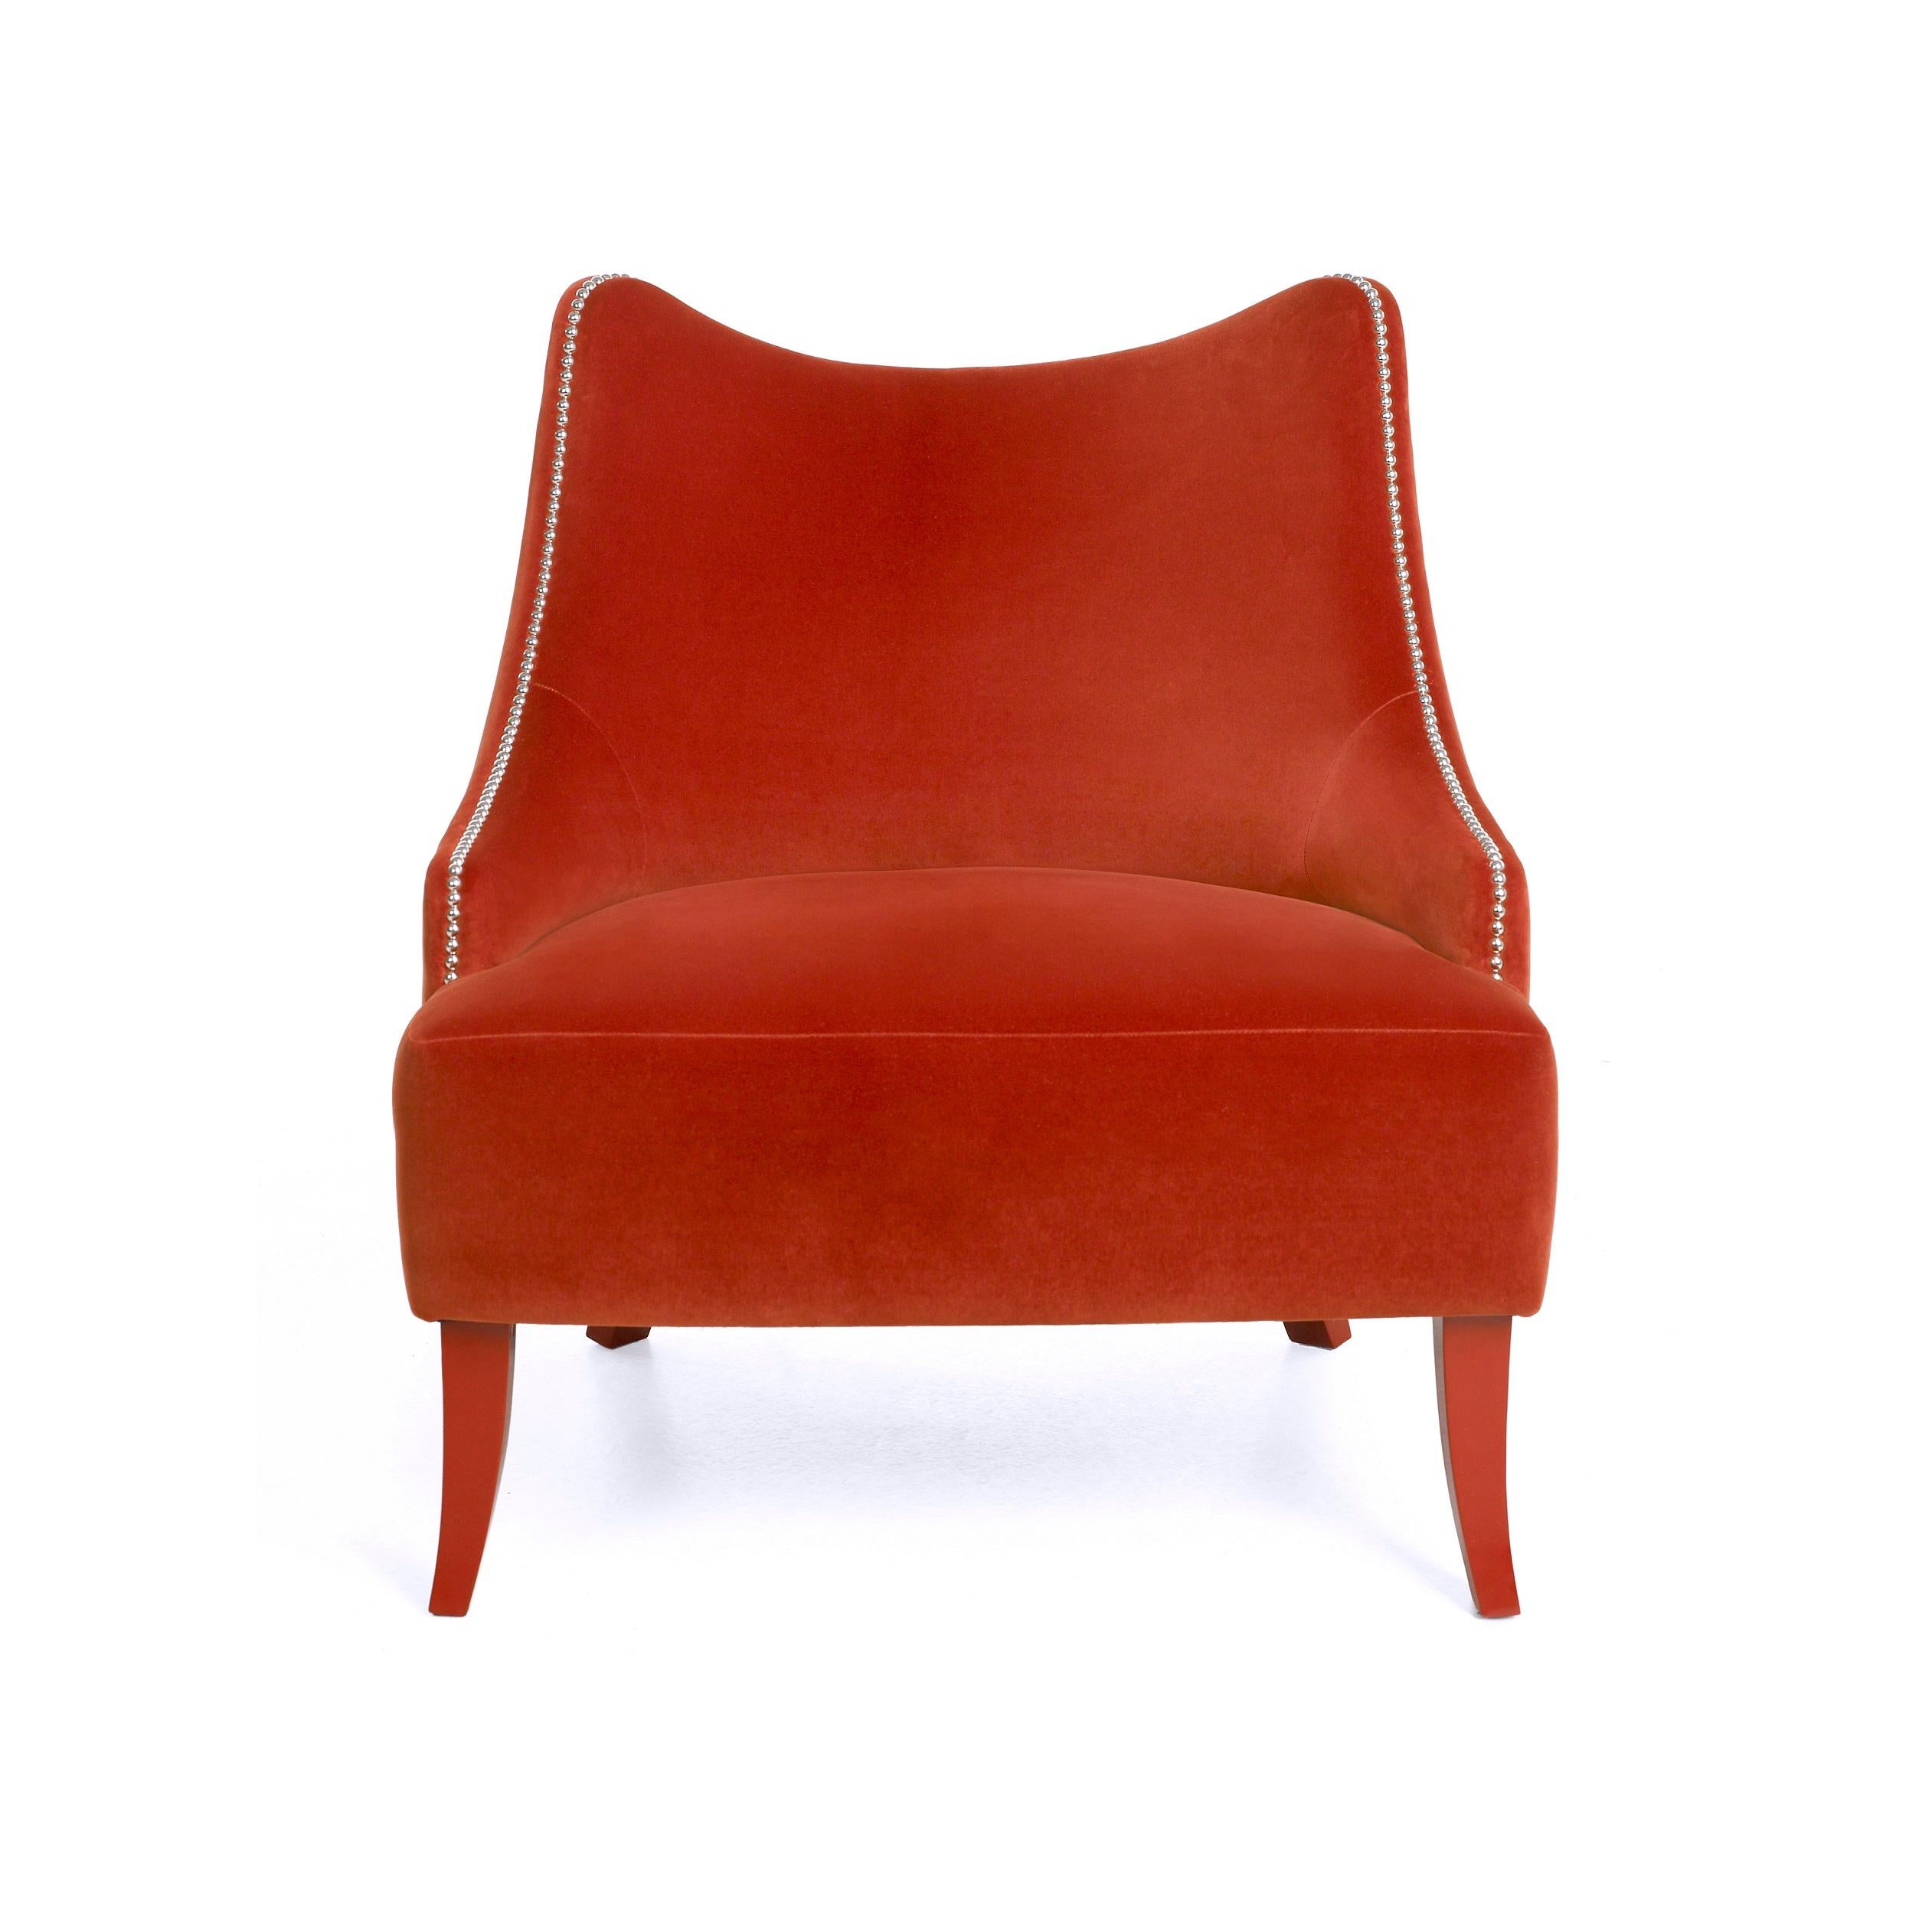 Ce fauteuil est l'exemple même d'un design induisant la sérénité. Avec une silhouette enveloppante et une luxueuse assise profonde, ses courbes sensuelles et son dossier confortable s'adaptent parfaitement au corps. Les clous qui ornent les courbes